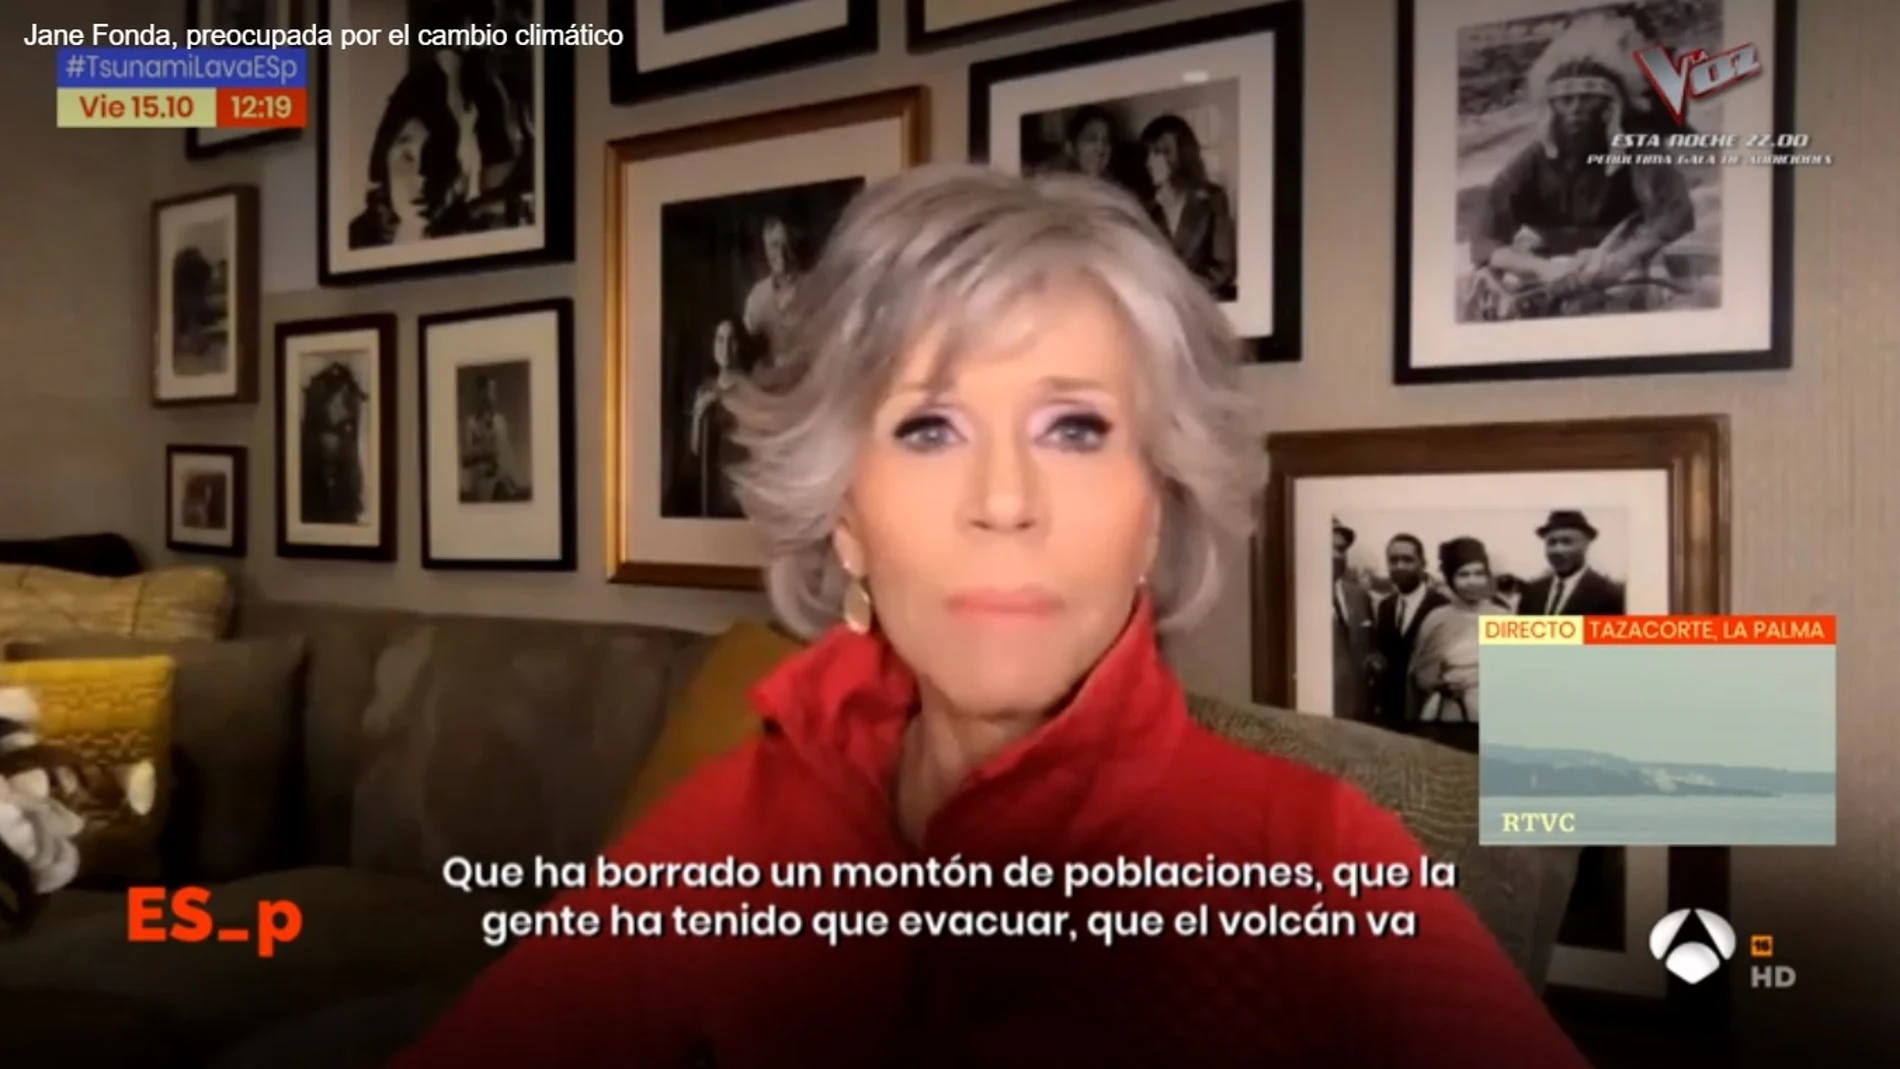 Jane Fonda durante su intervención